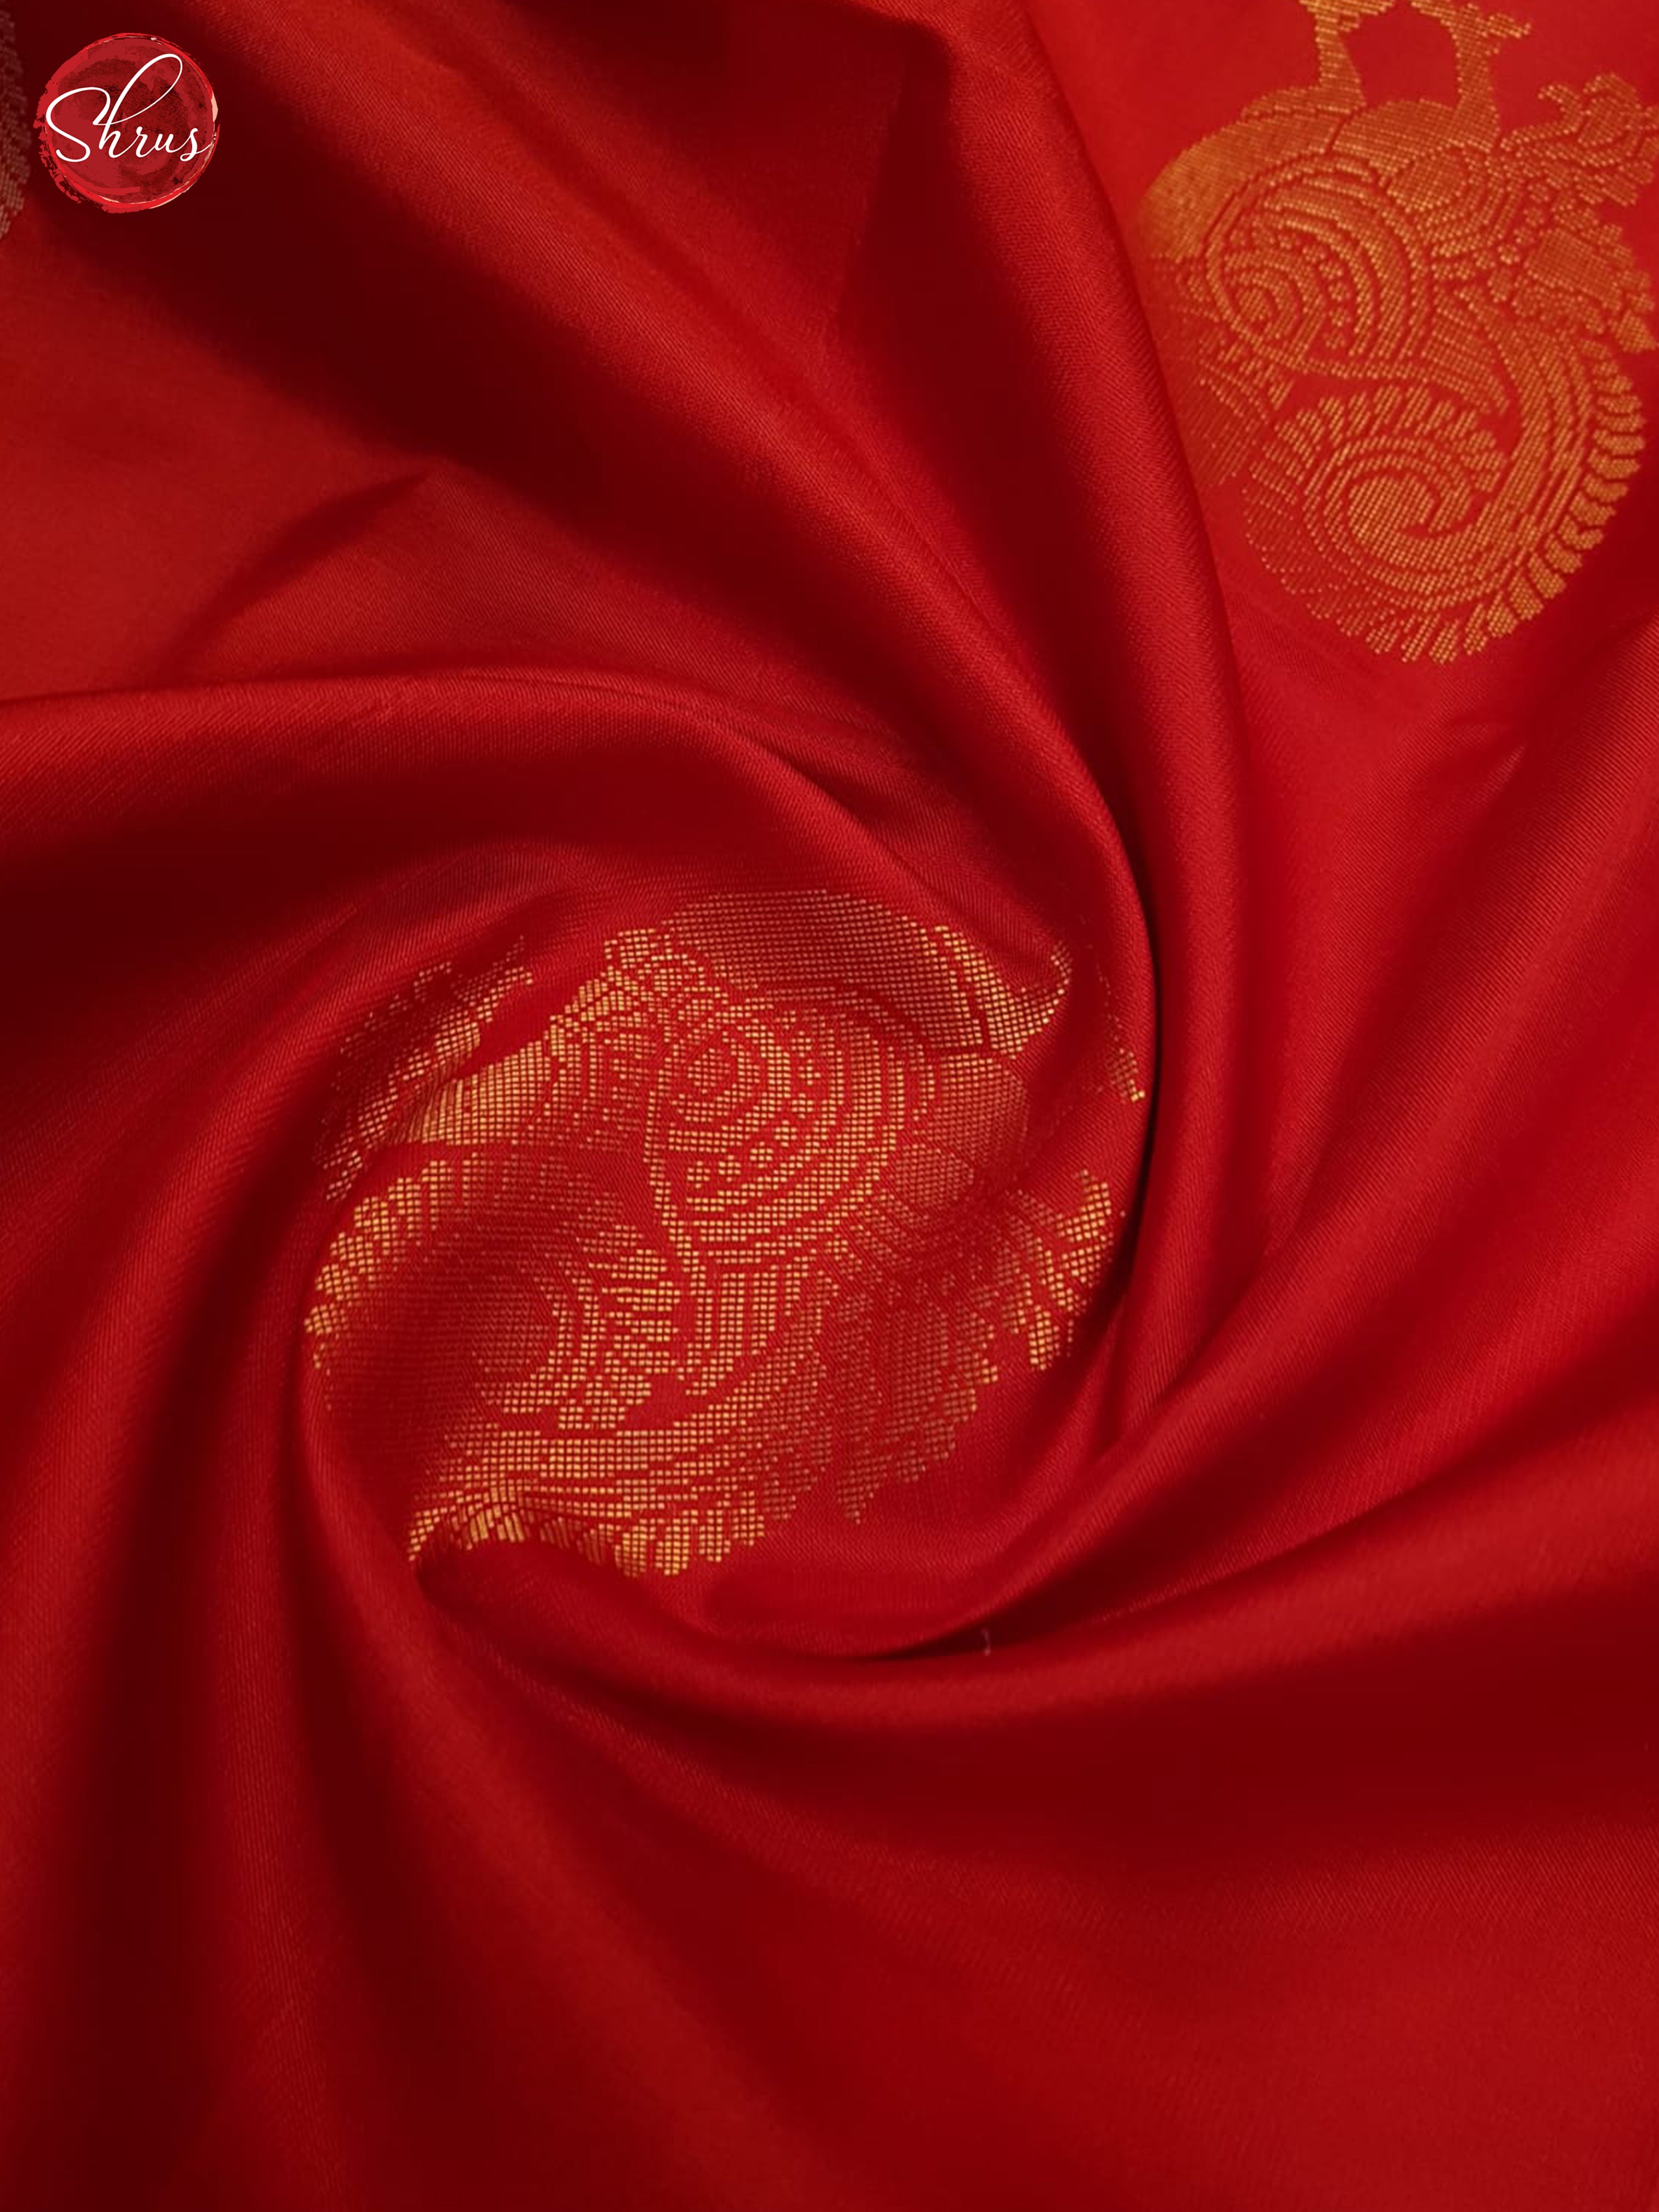 Red & Blue- Soft Silk Saree - Shop on ShrusEternity.com